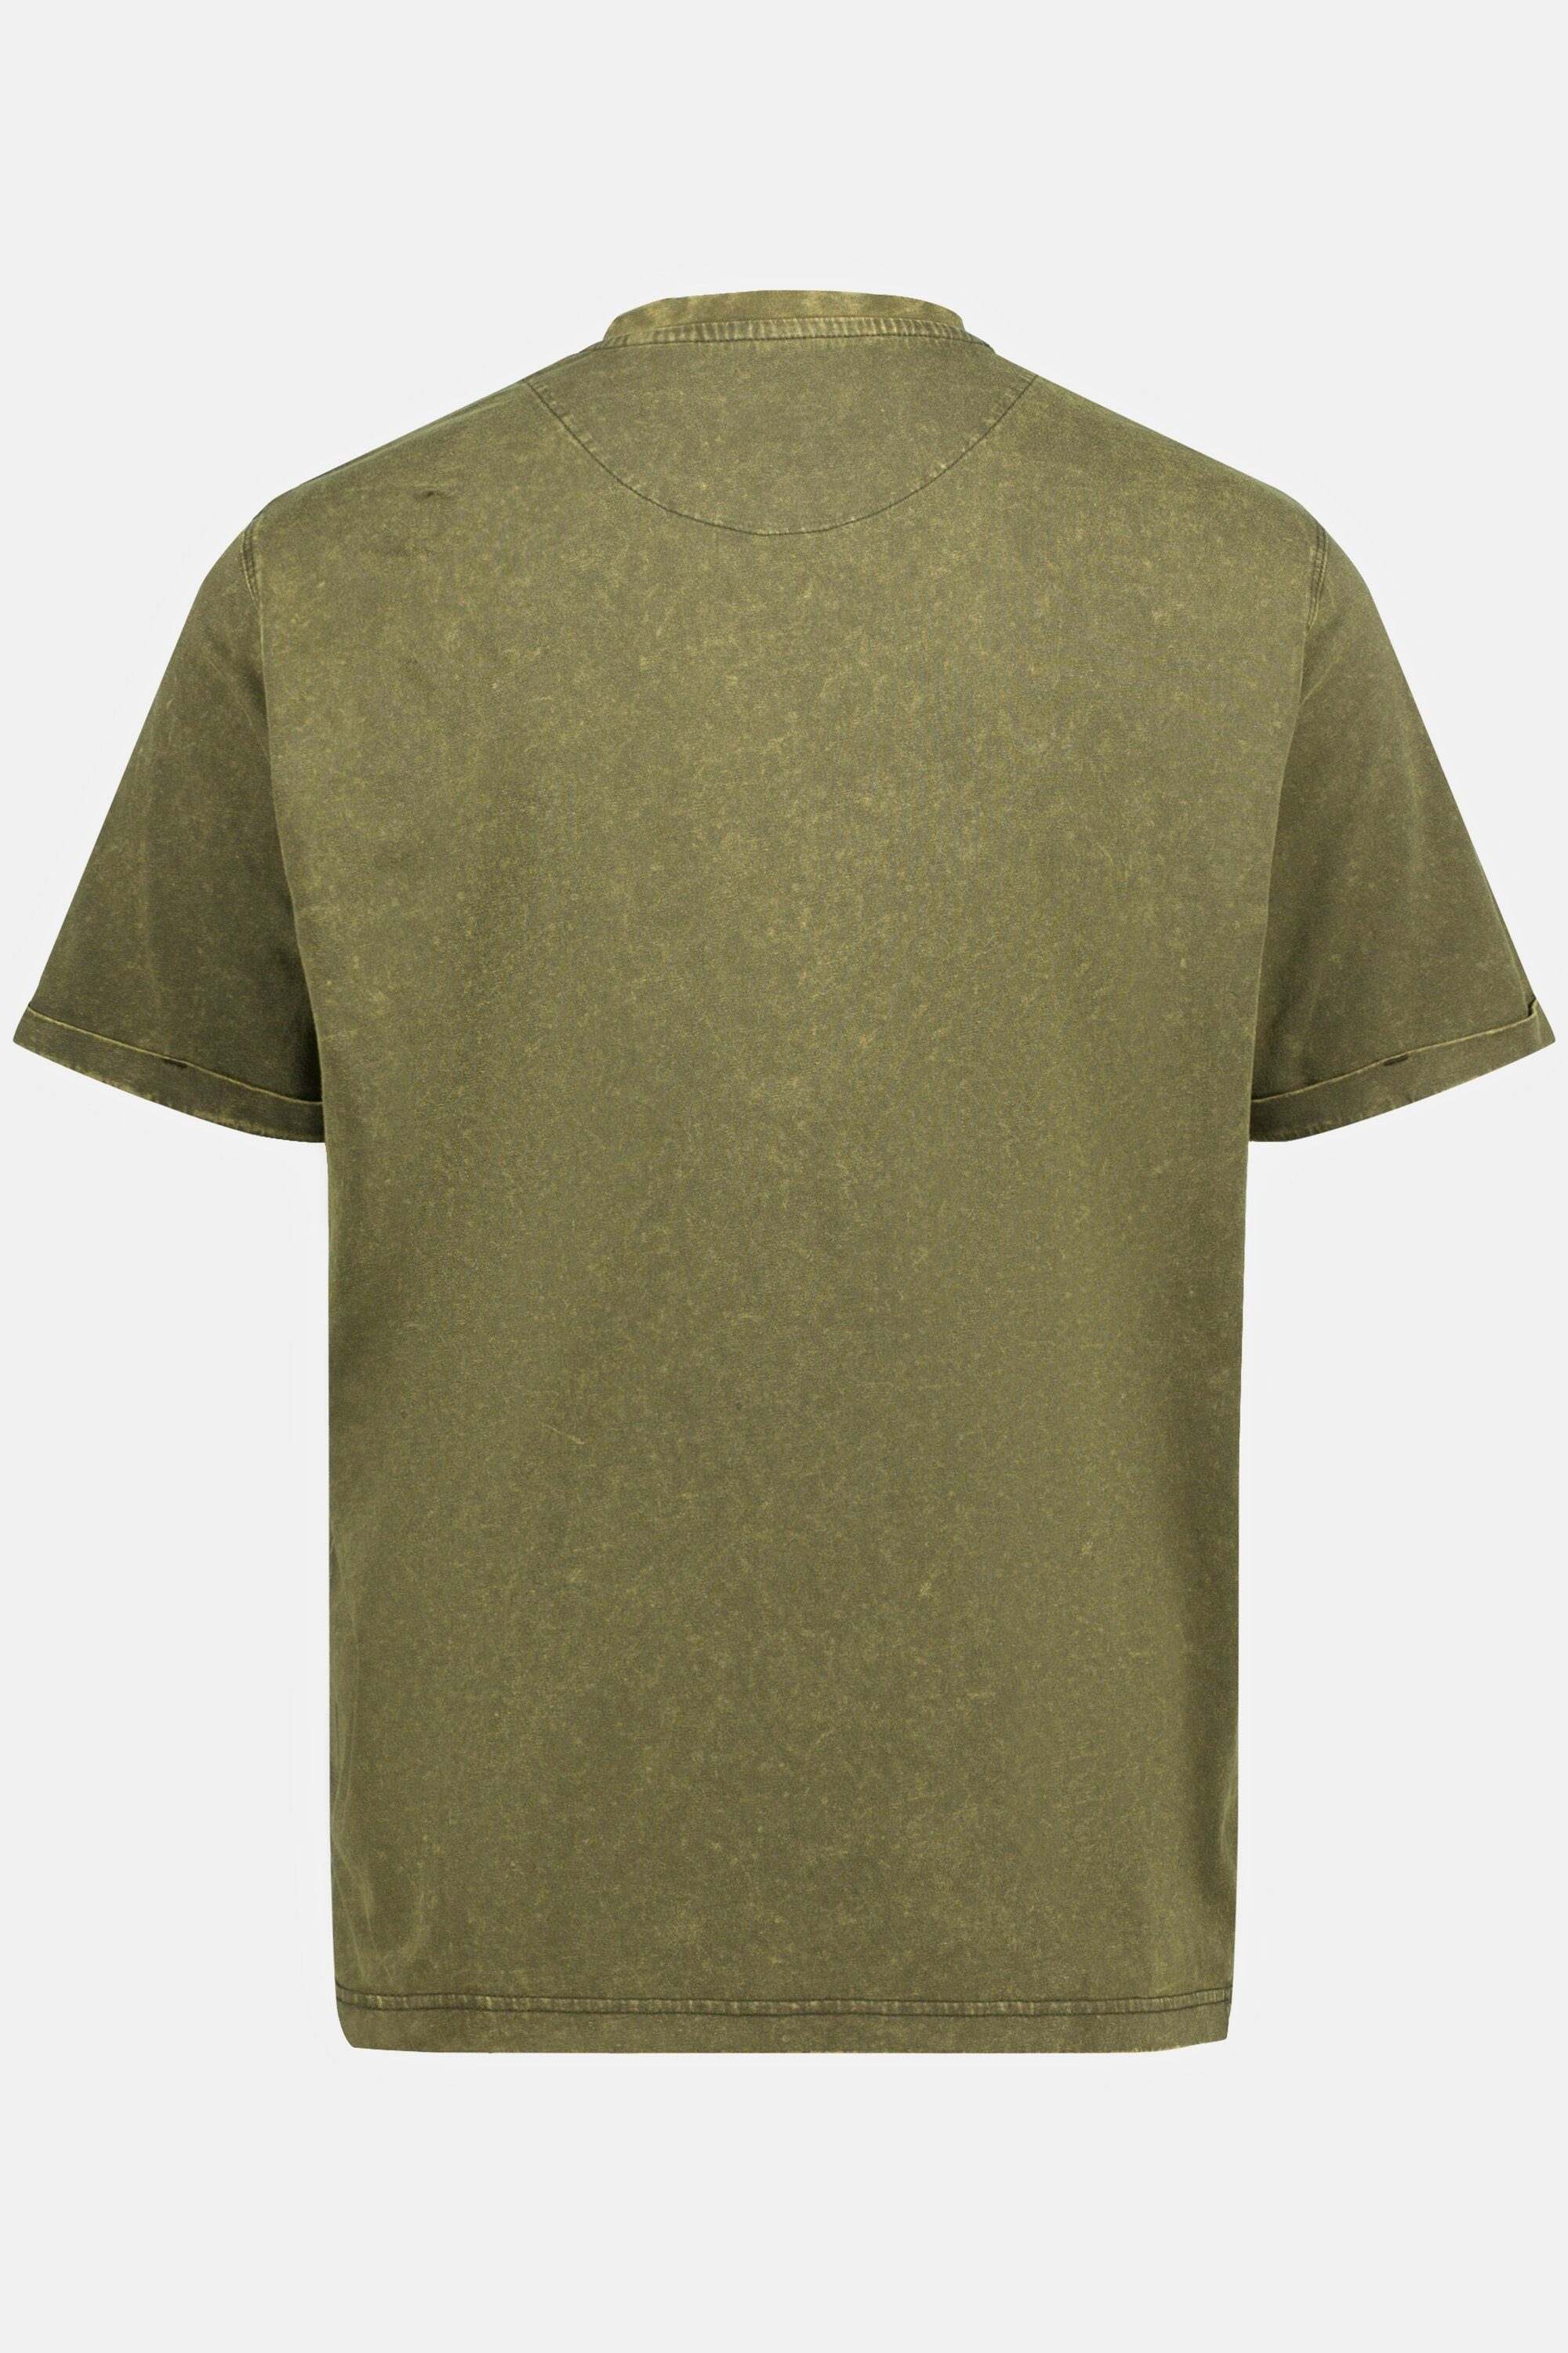 tannengrün T-Shirt JP1880 T-Shirt acid Halbarm washed V-Ausschnitt